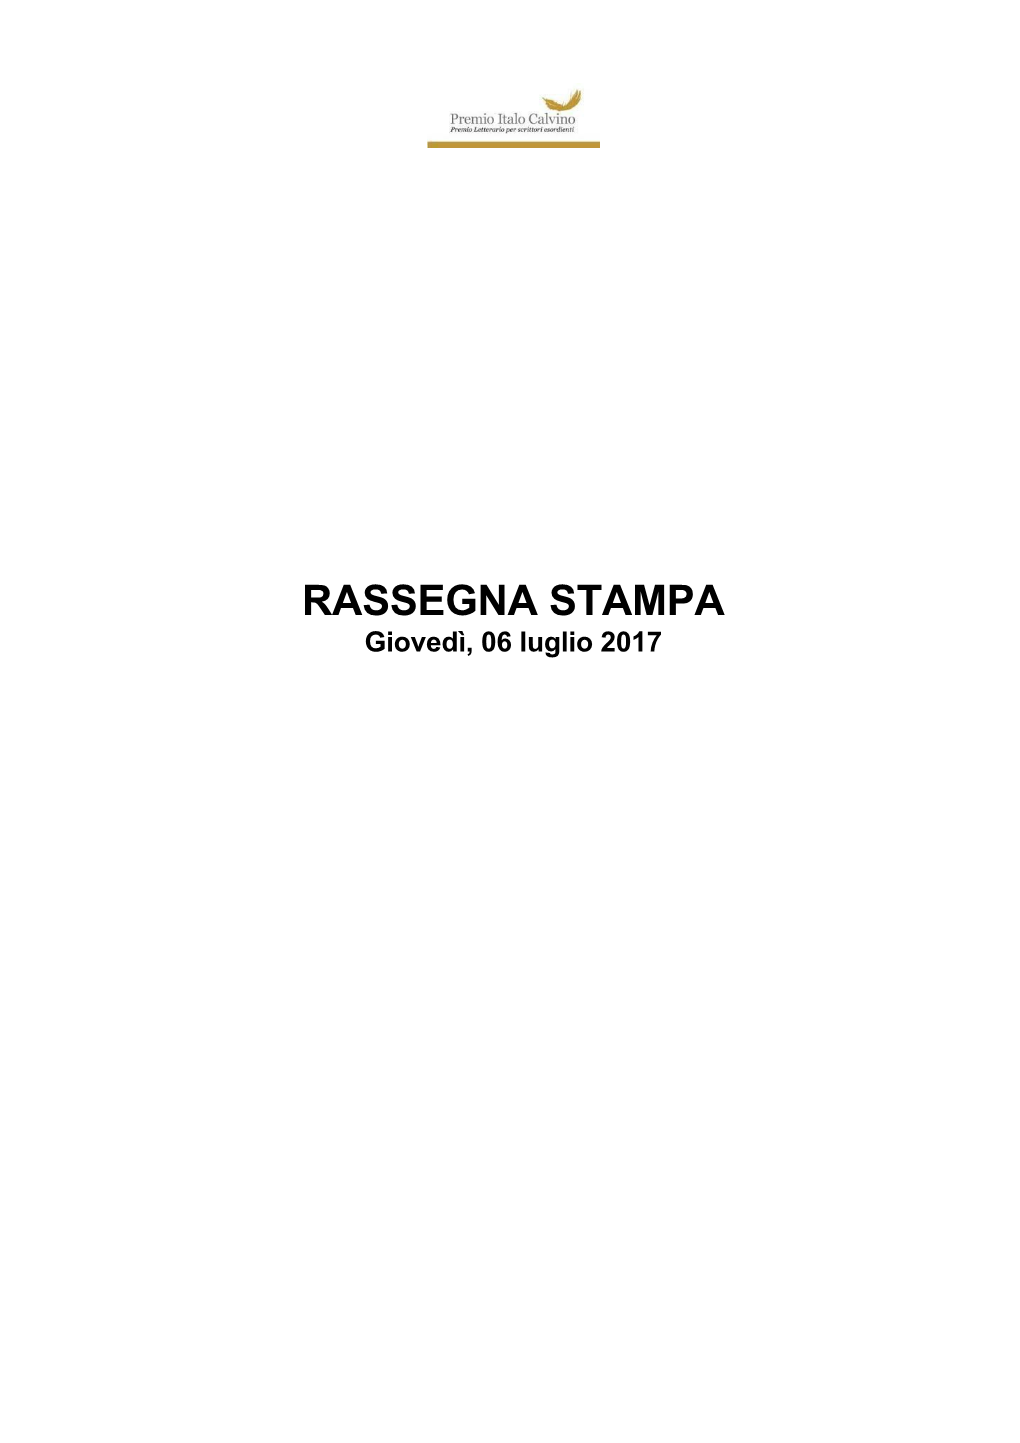 Rassegna Stampa Maggio 2017